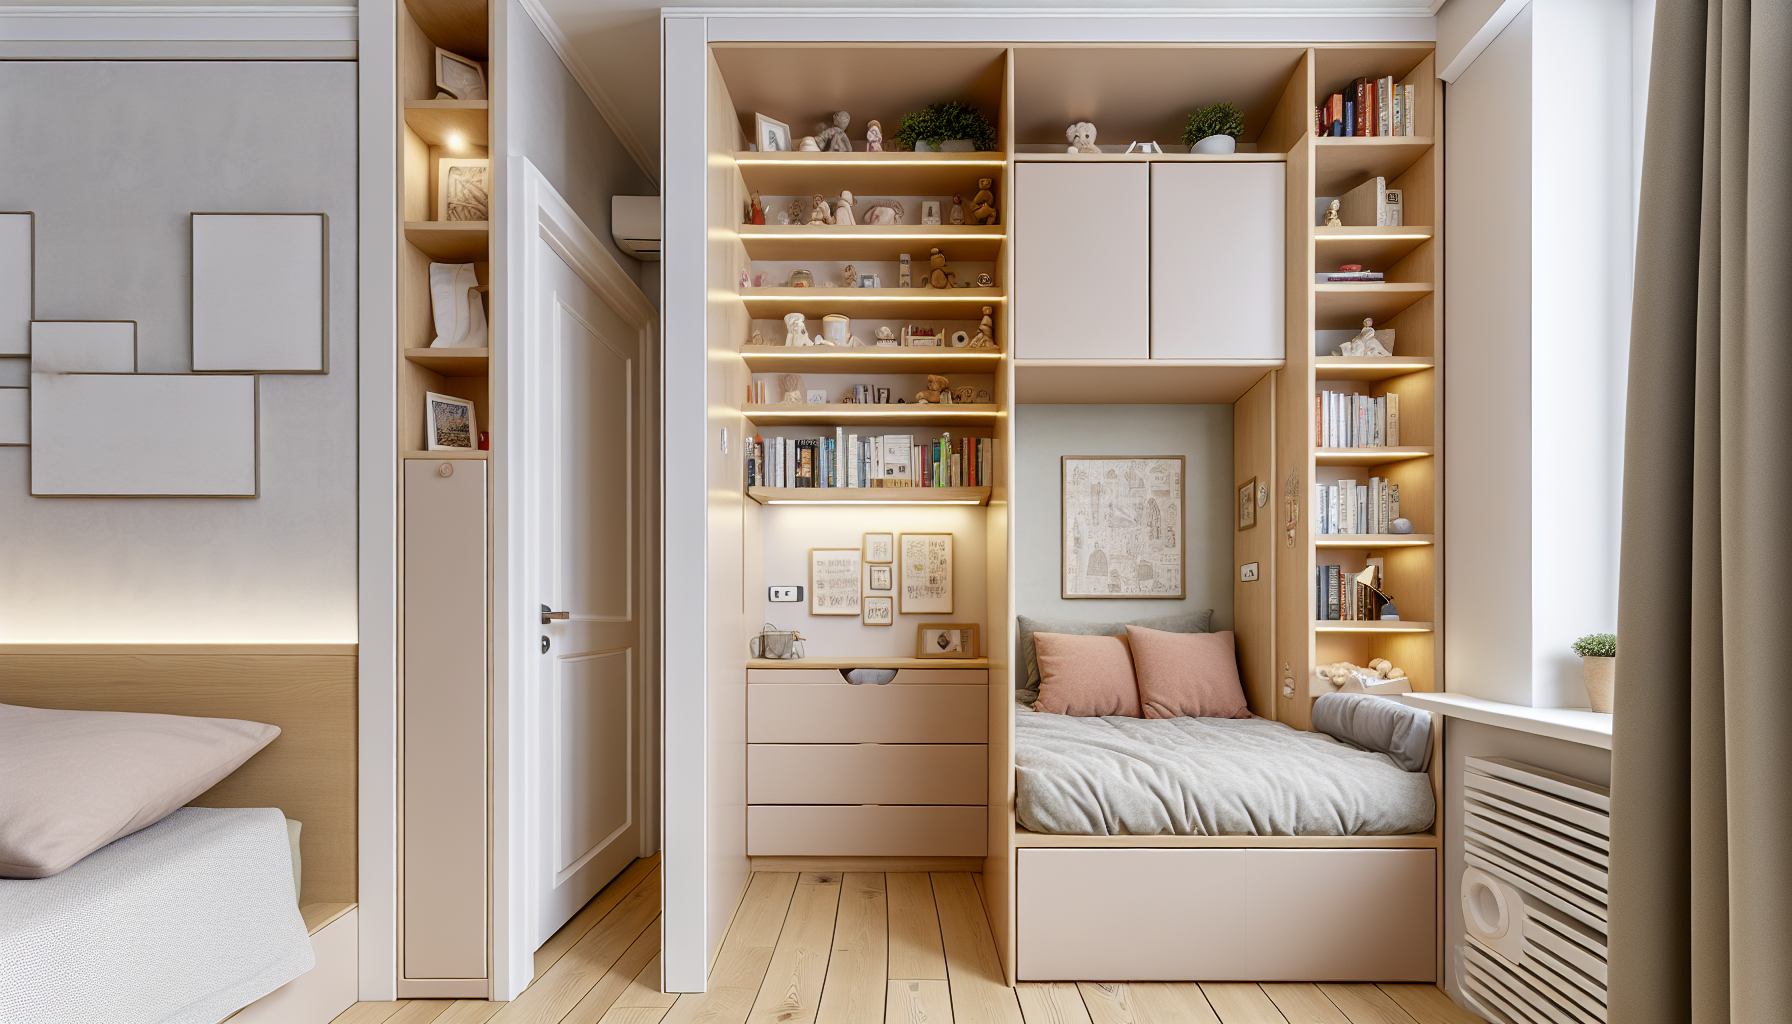 Inteligentne rozwiązania do przechowywania dla małych sypialni z otwartymi półkami i wbudowanymi narożnikami przy łóżkach